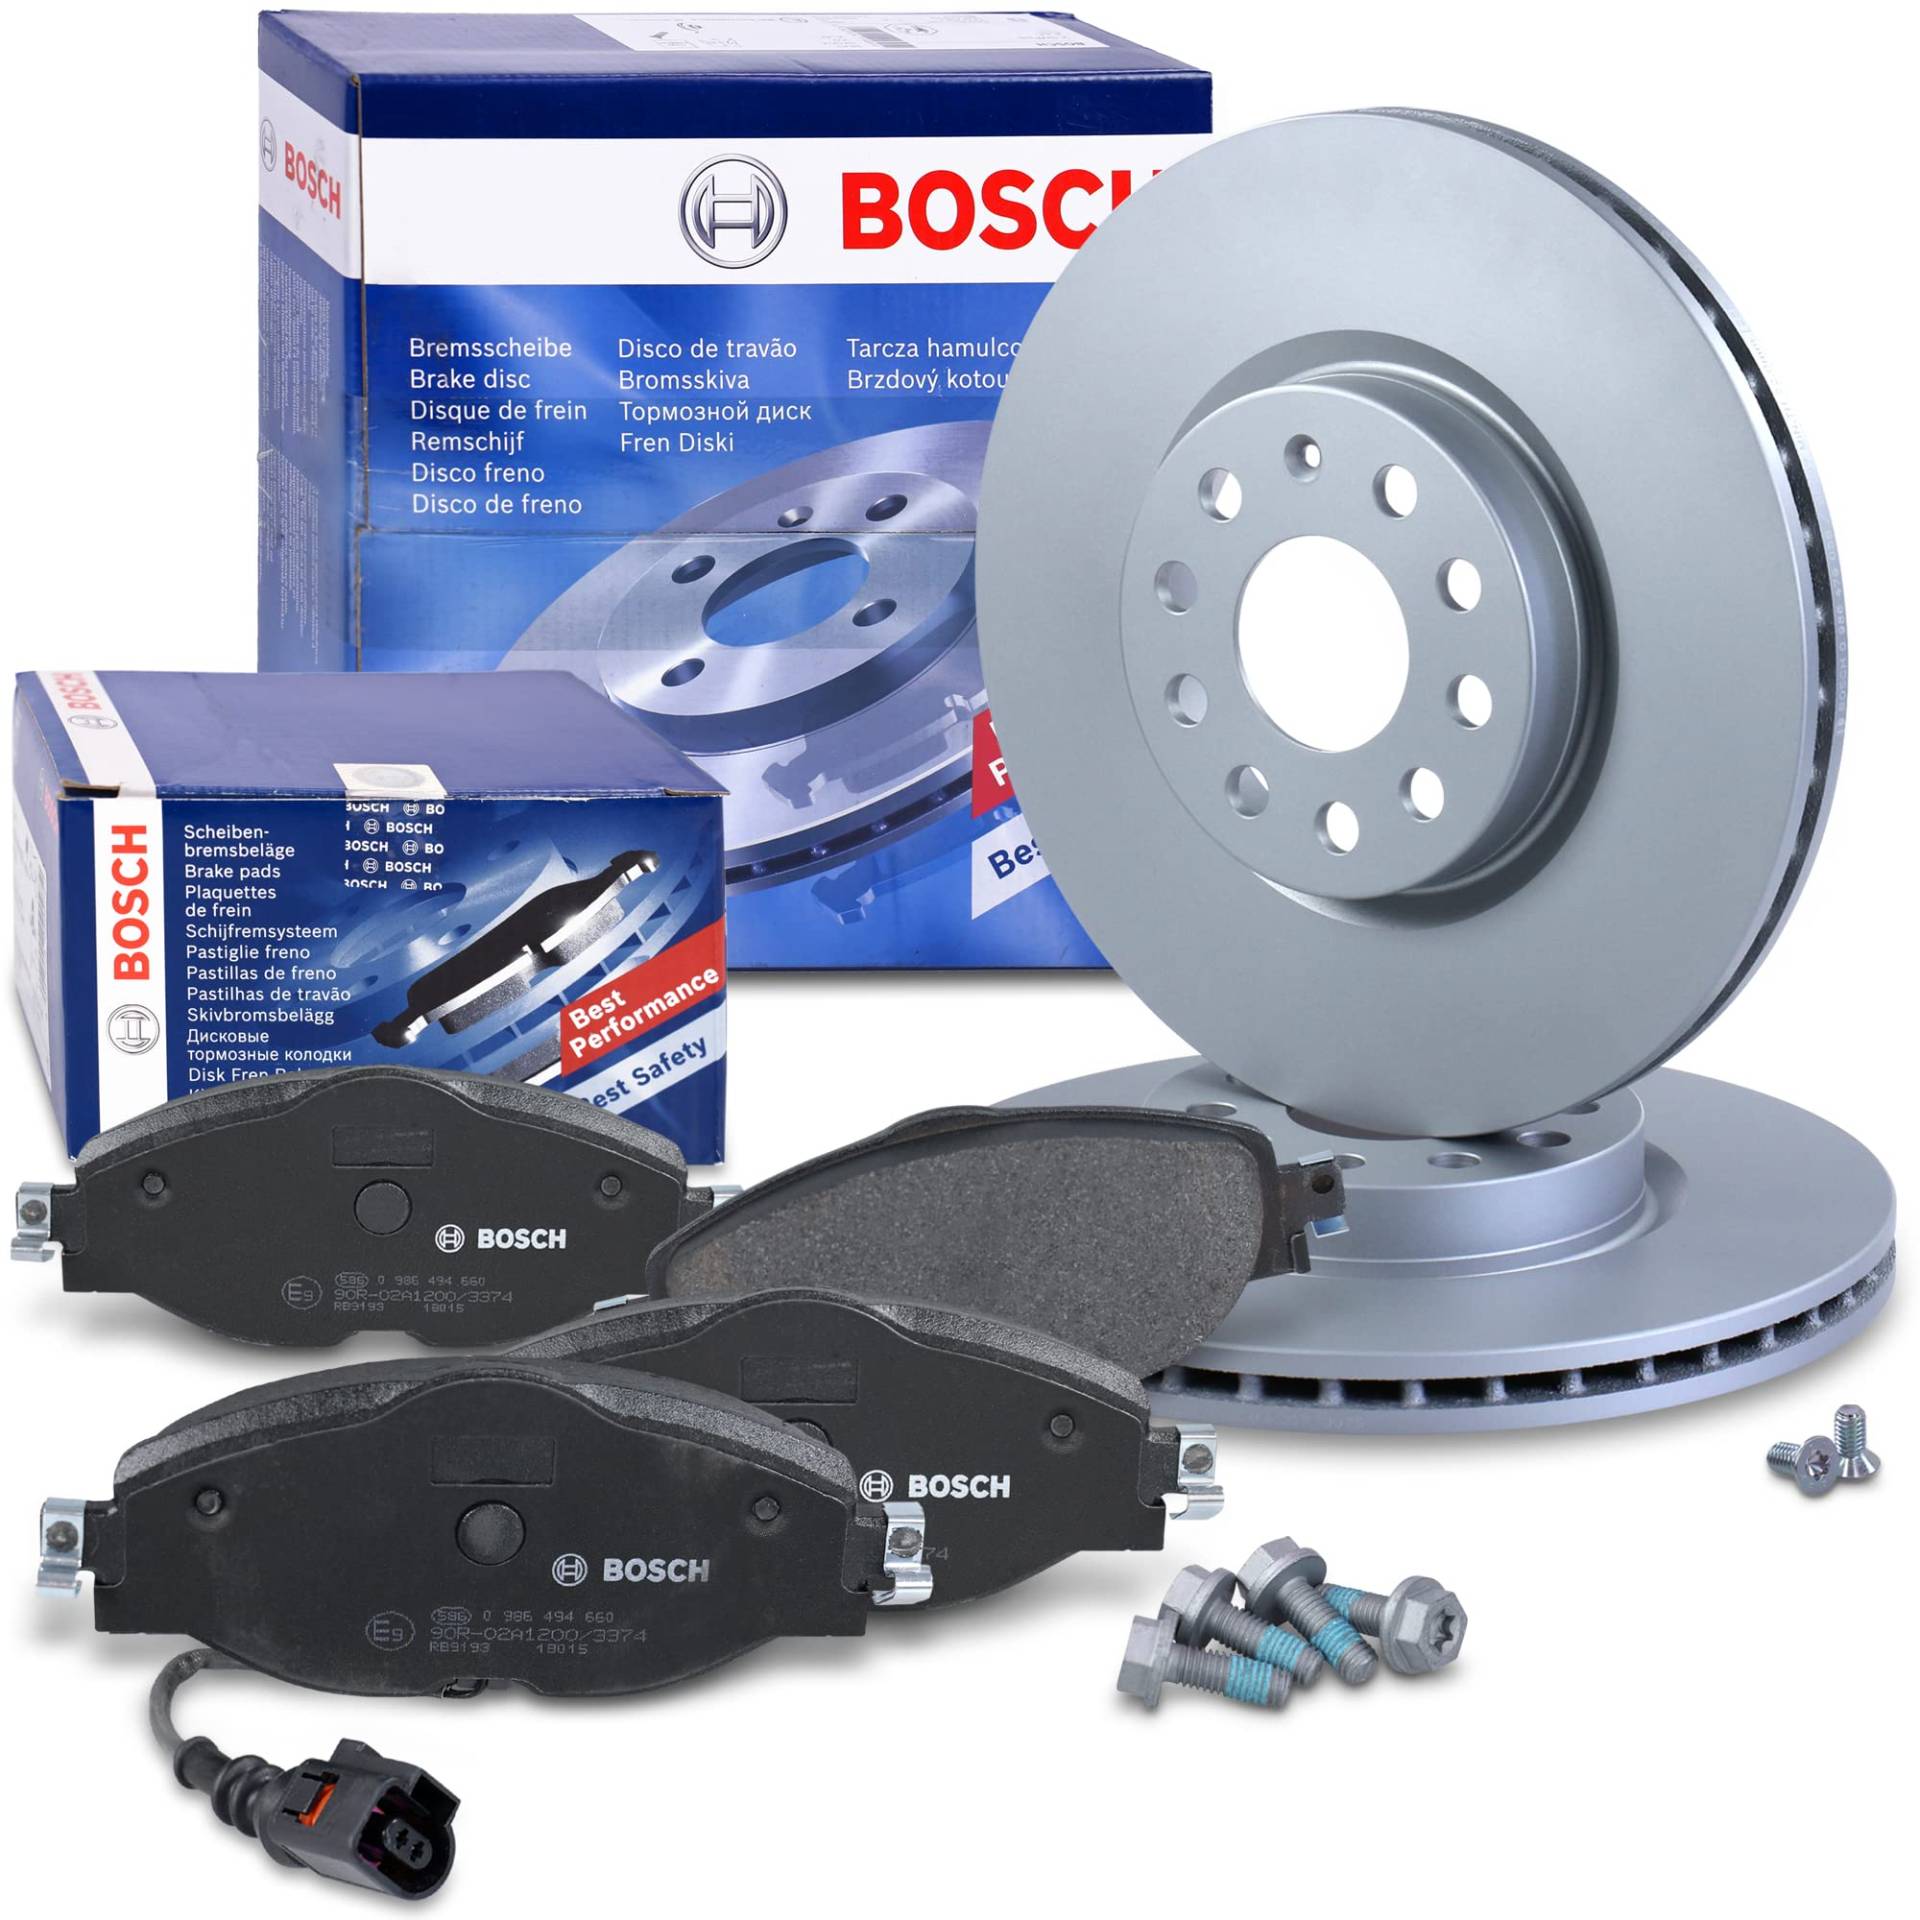 Bosch Bremsenset Vorderachse inkl. Bremsscheiben Vorne Ø 312 mm Belüftet und Bremsbeläge Vorne + Verschleißkontakt von BOSCH Bundle